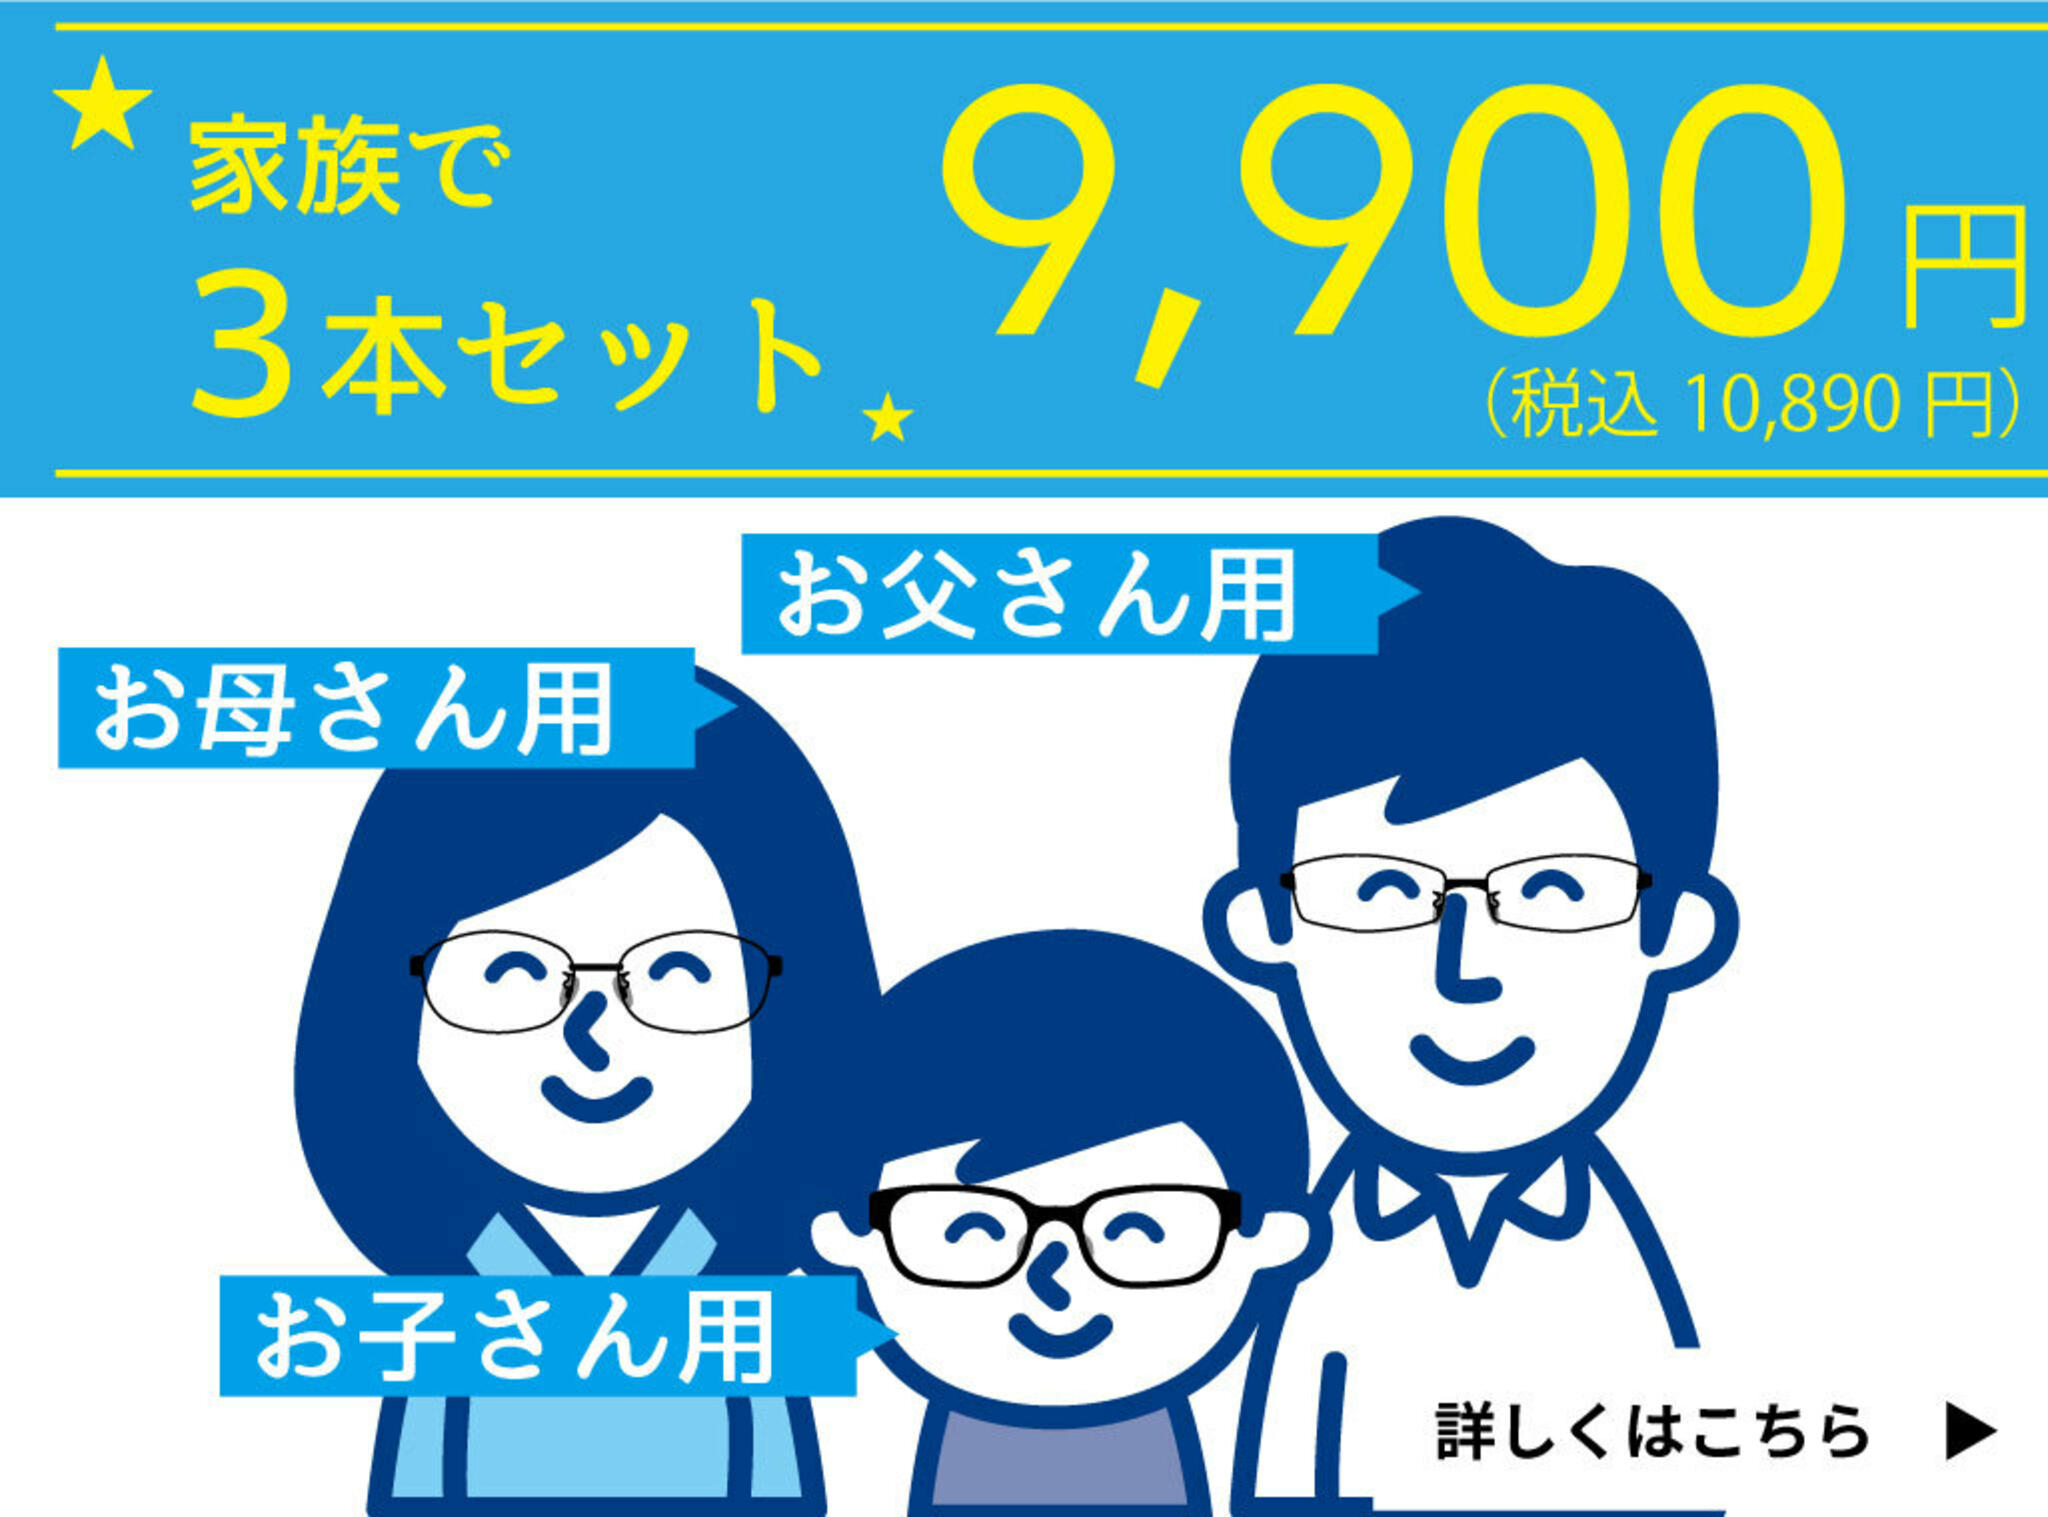 ドクターアイズ宮崎大塚店からのお知らせ(家族で買えるメガネ3本セット )に関する写真